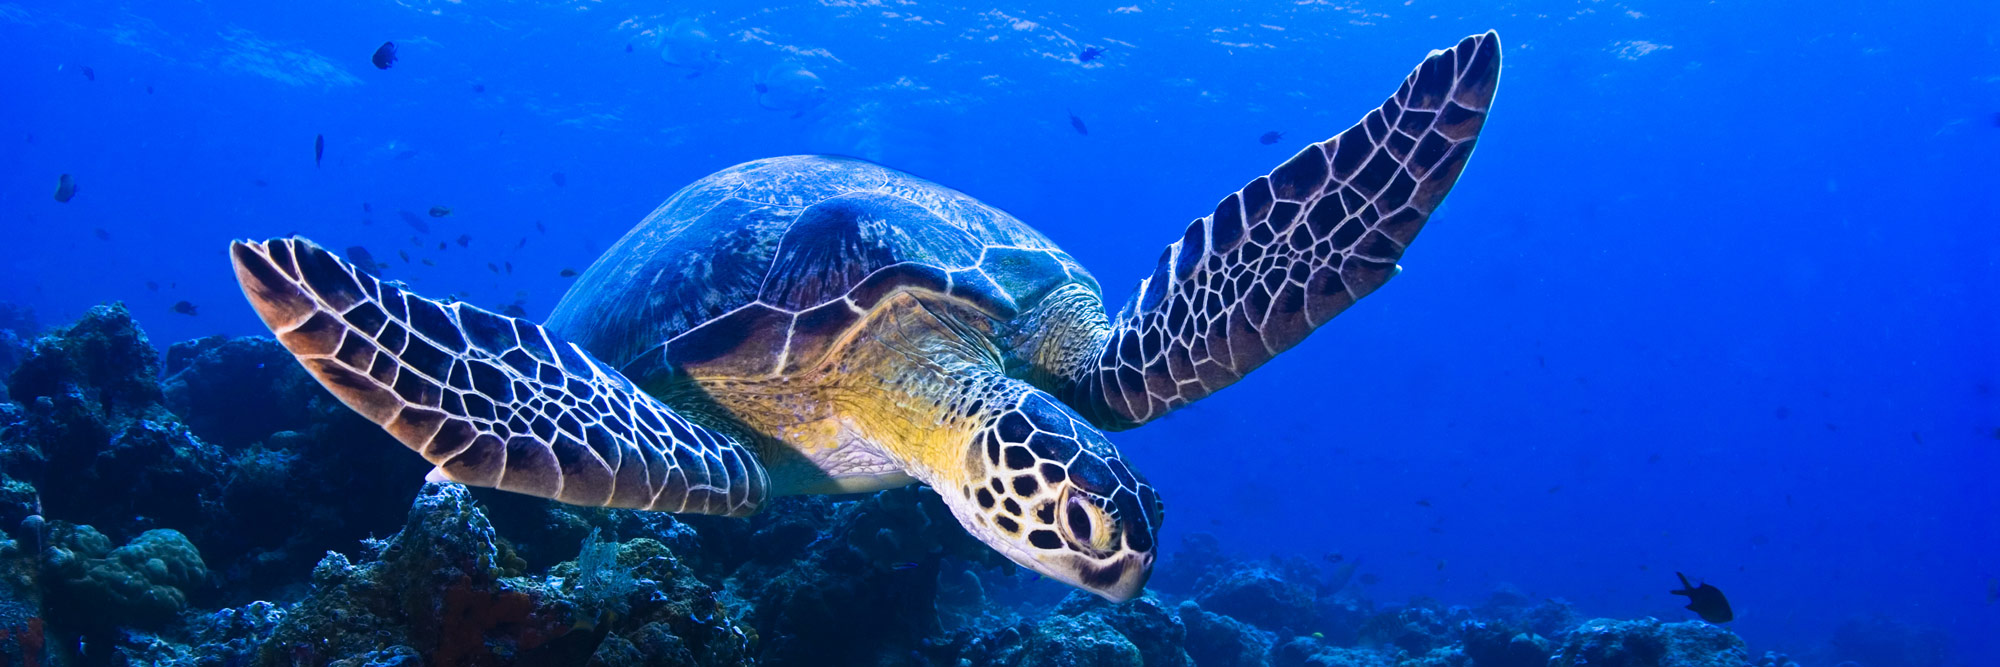 Florida Keys Sea Turtle